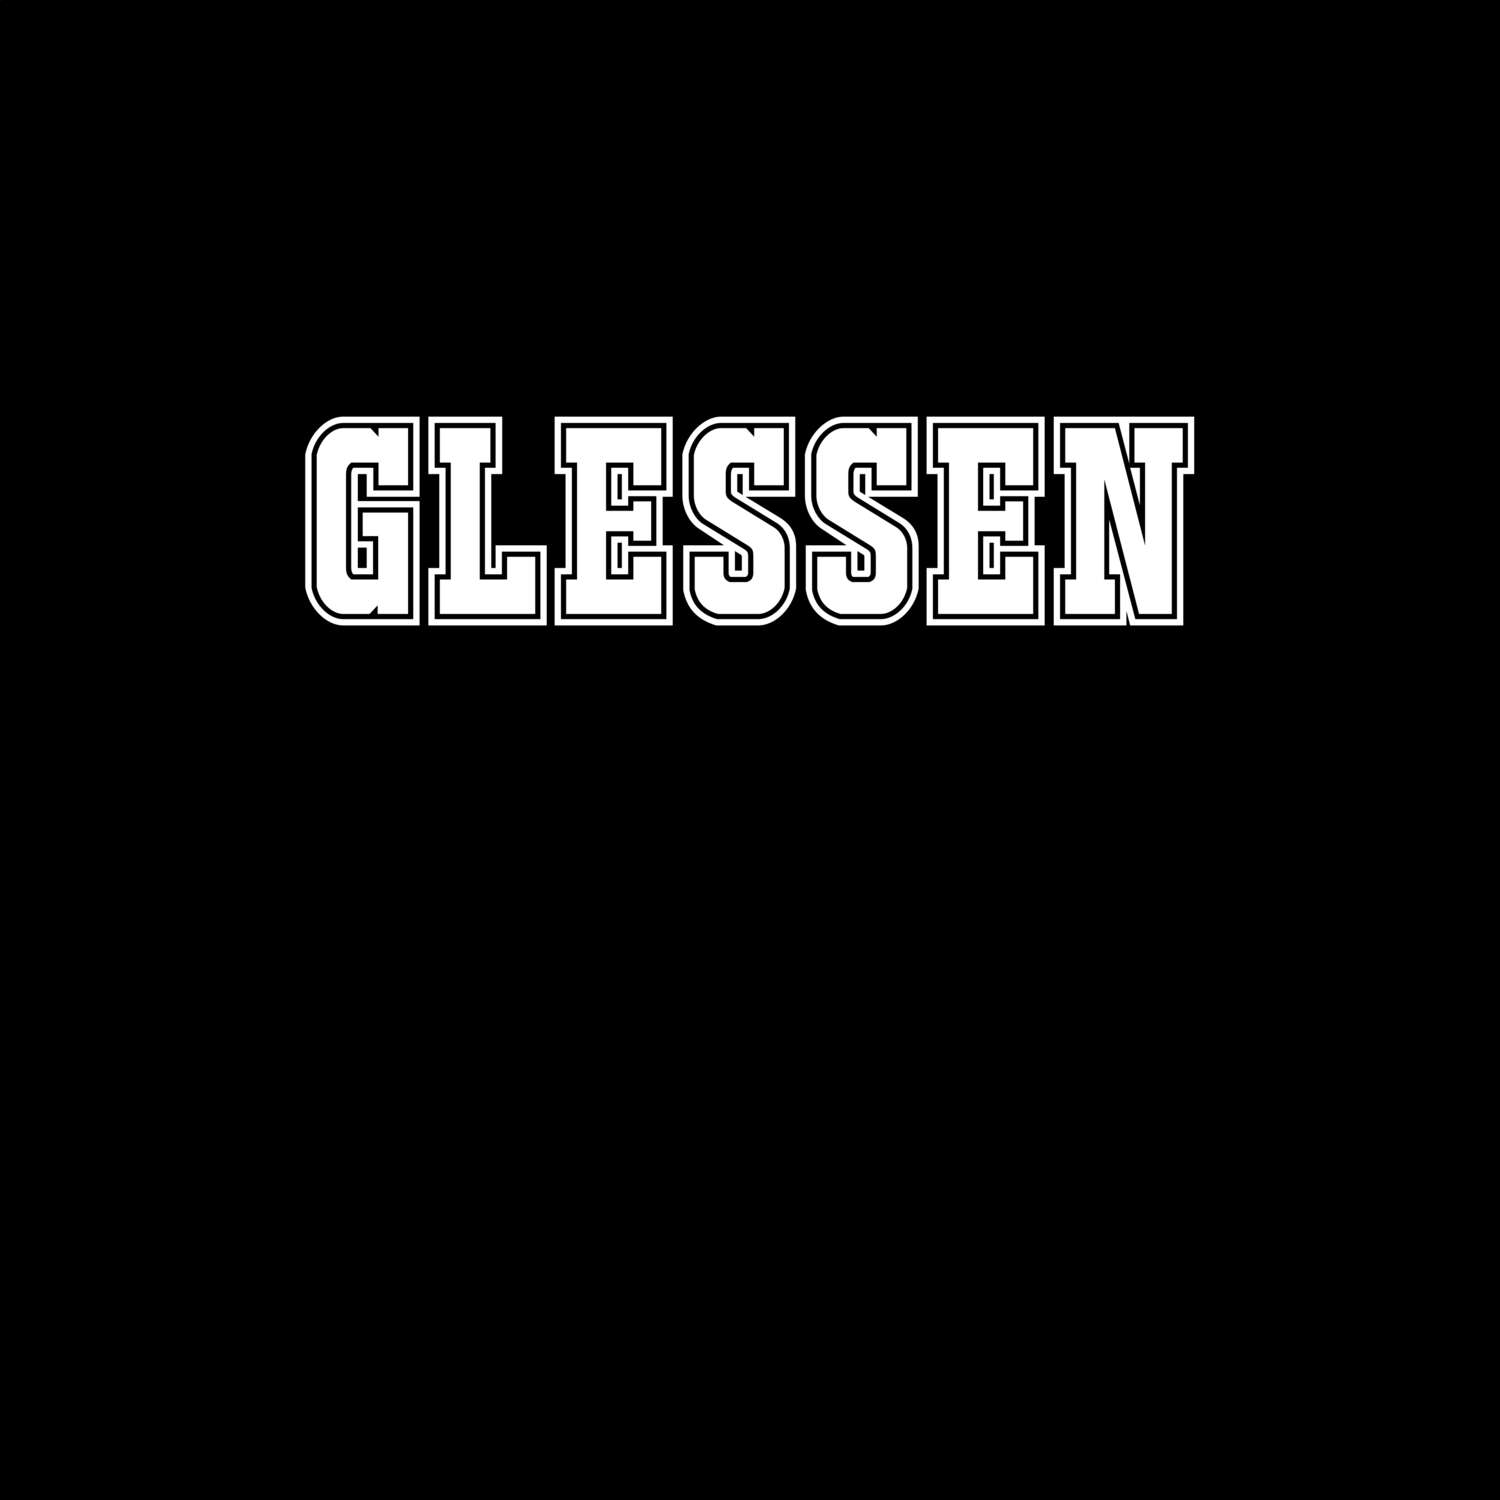 Glessen T-Shirt »Classic«